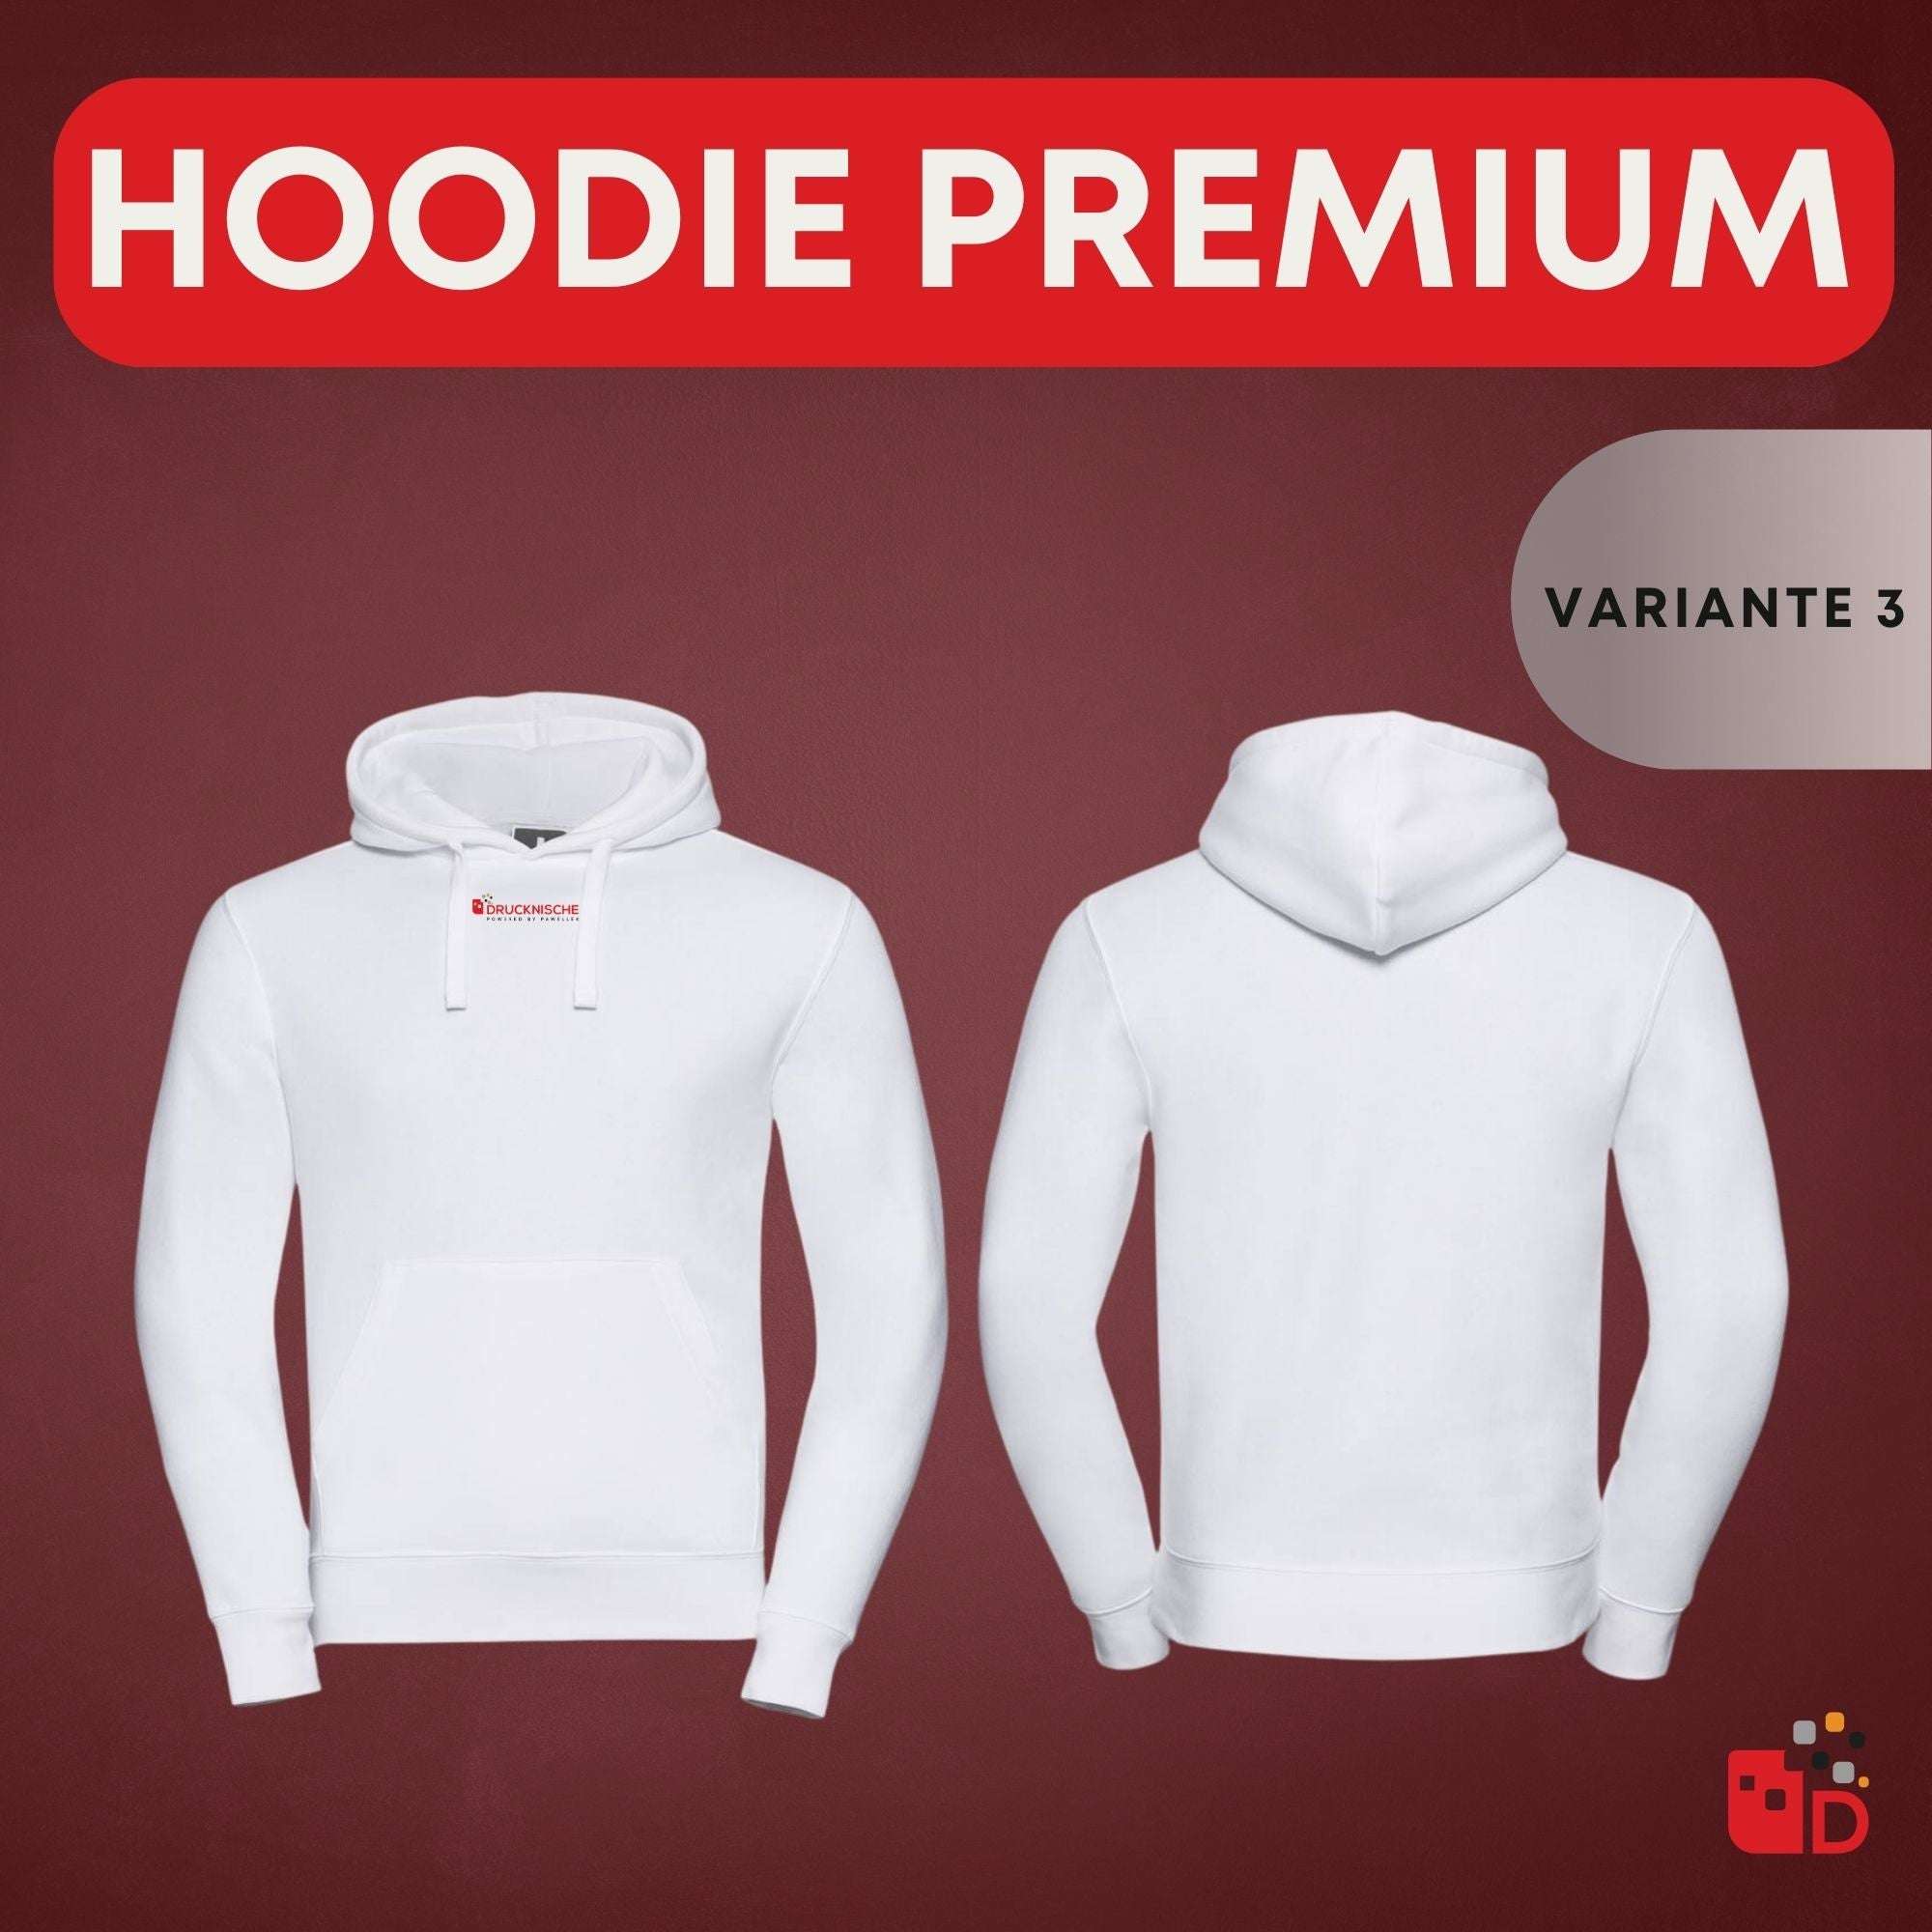 Hoodie Premium